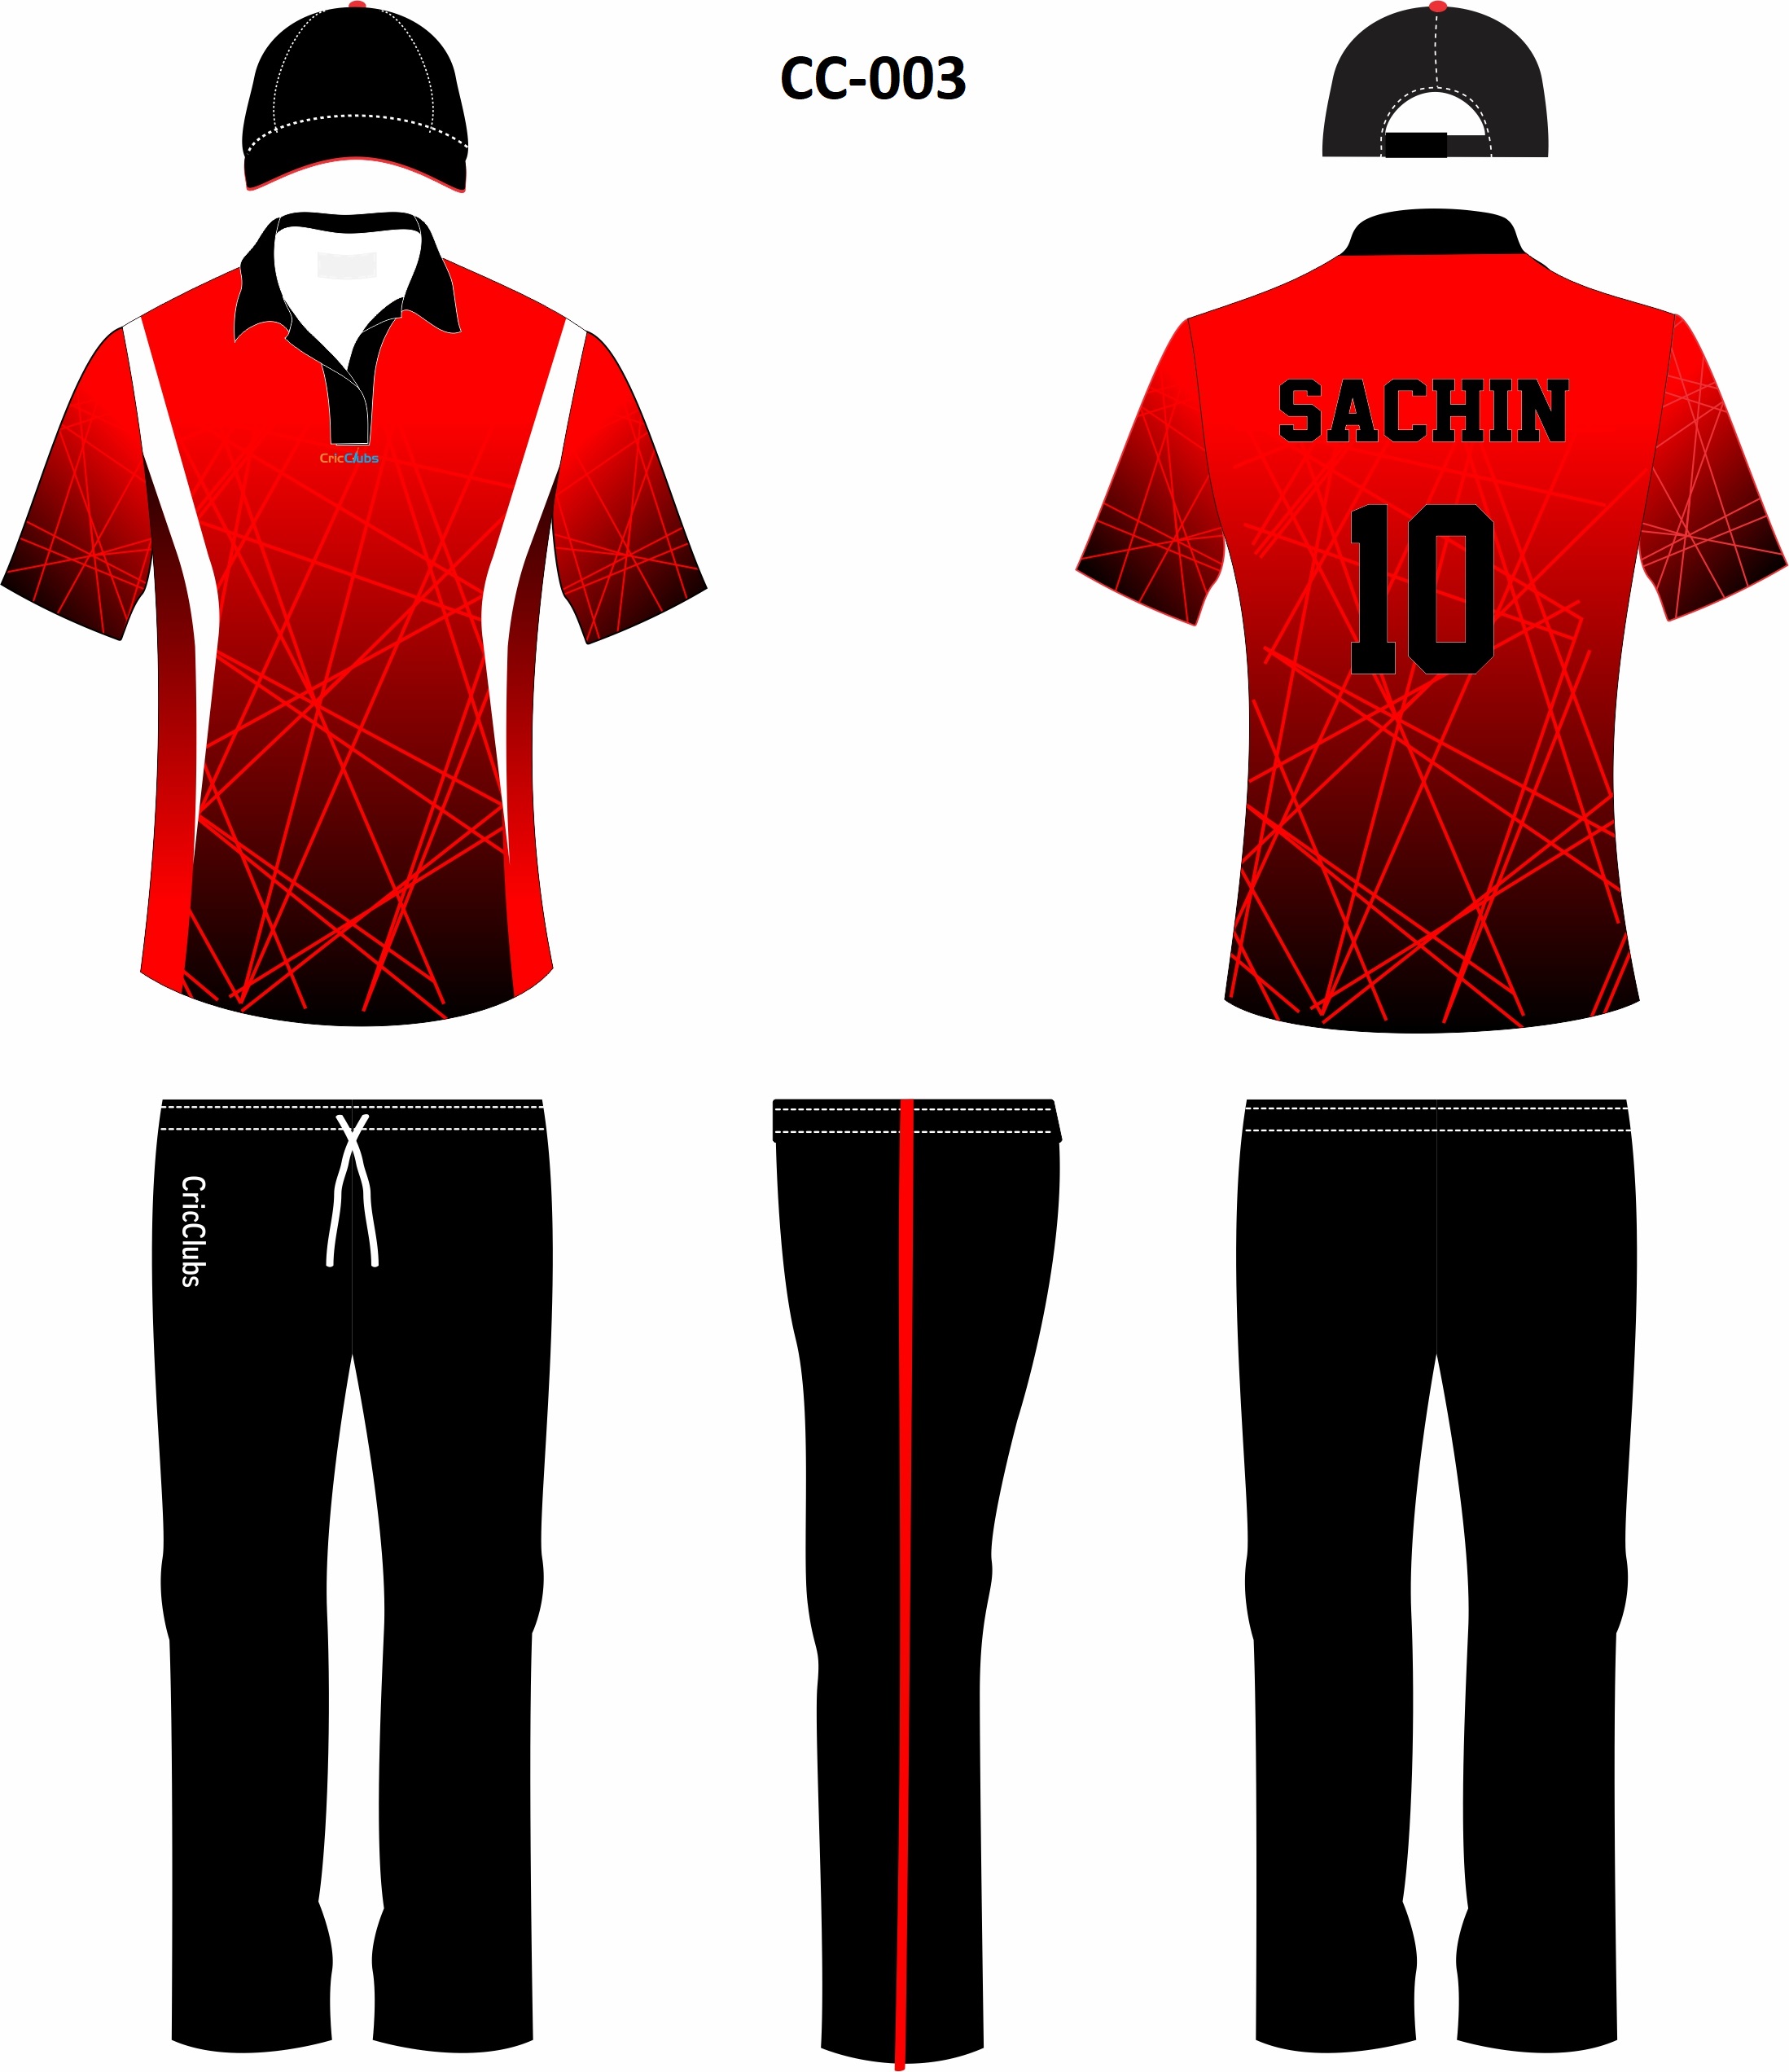 best cricket jersey design 2020